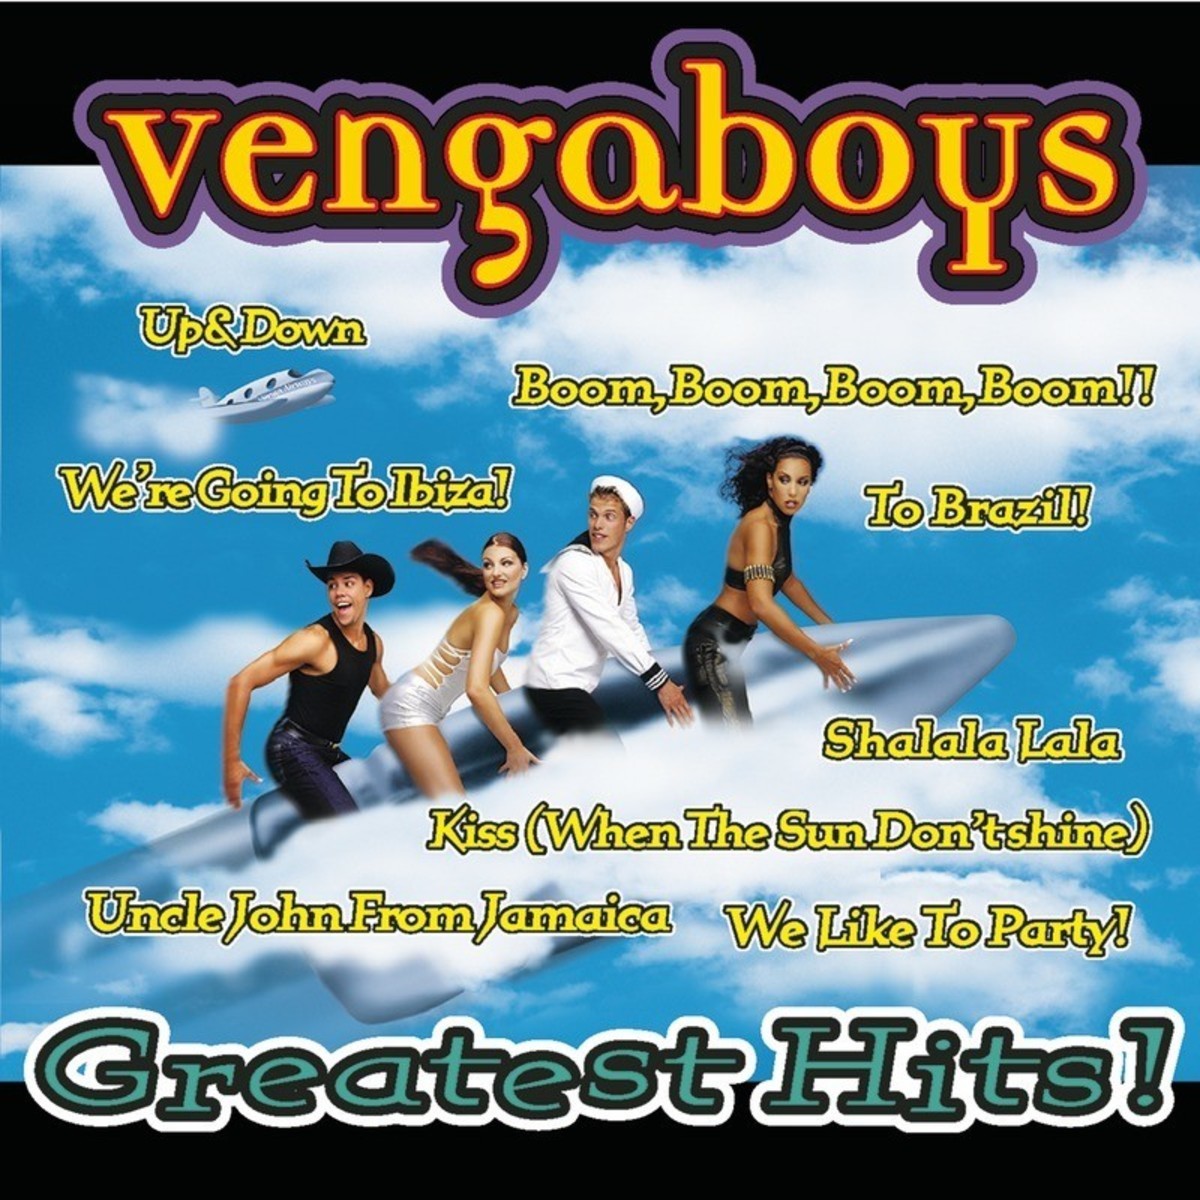 Vengaboys Full Mp3 Songs Free Download Xploder Product Key Keygen ...